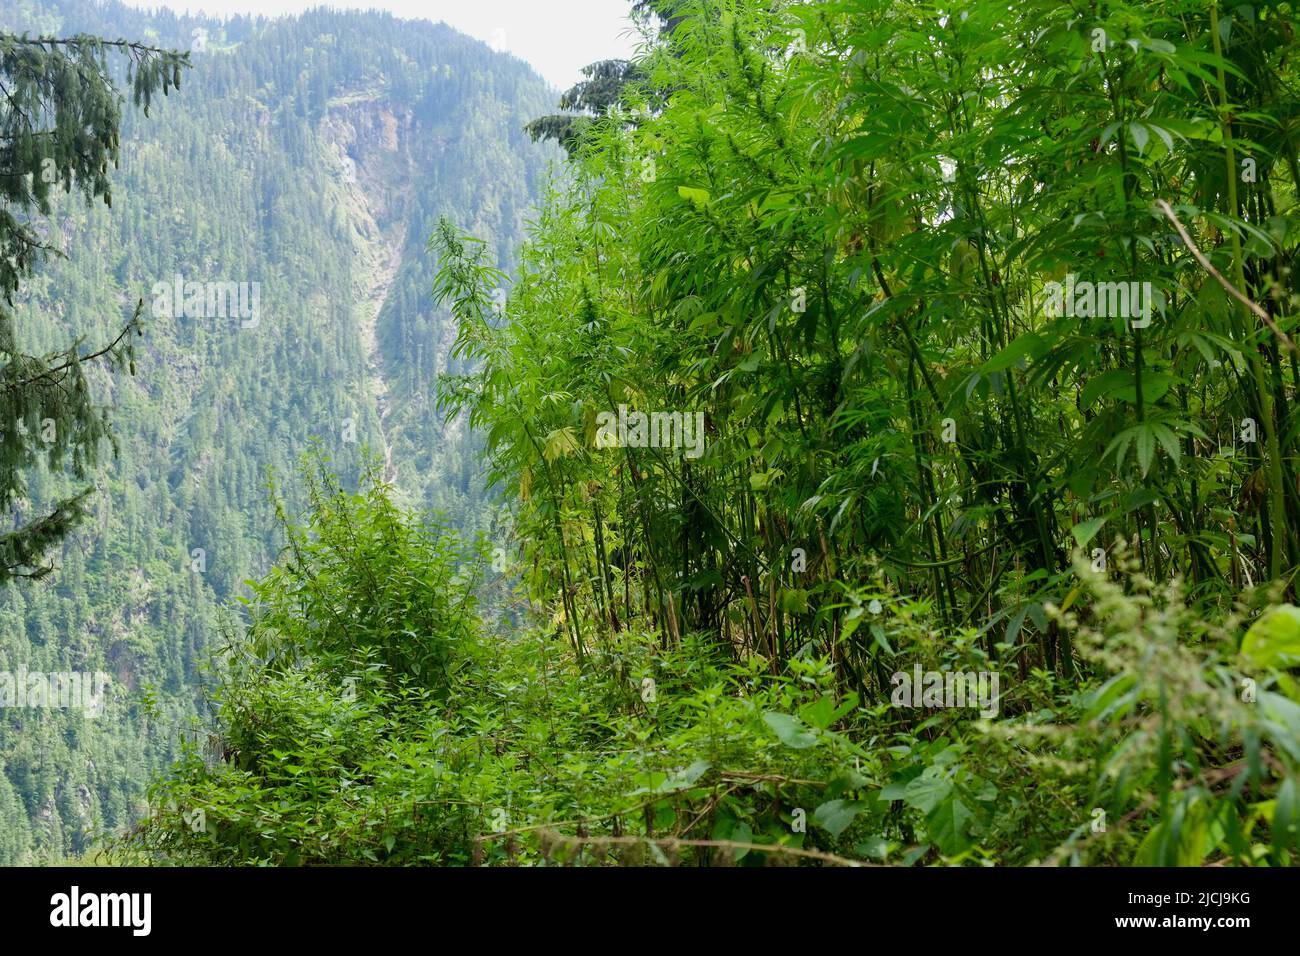 Vilalge Malana, Himachal Pradesh Stock Photo